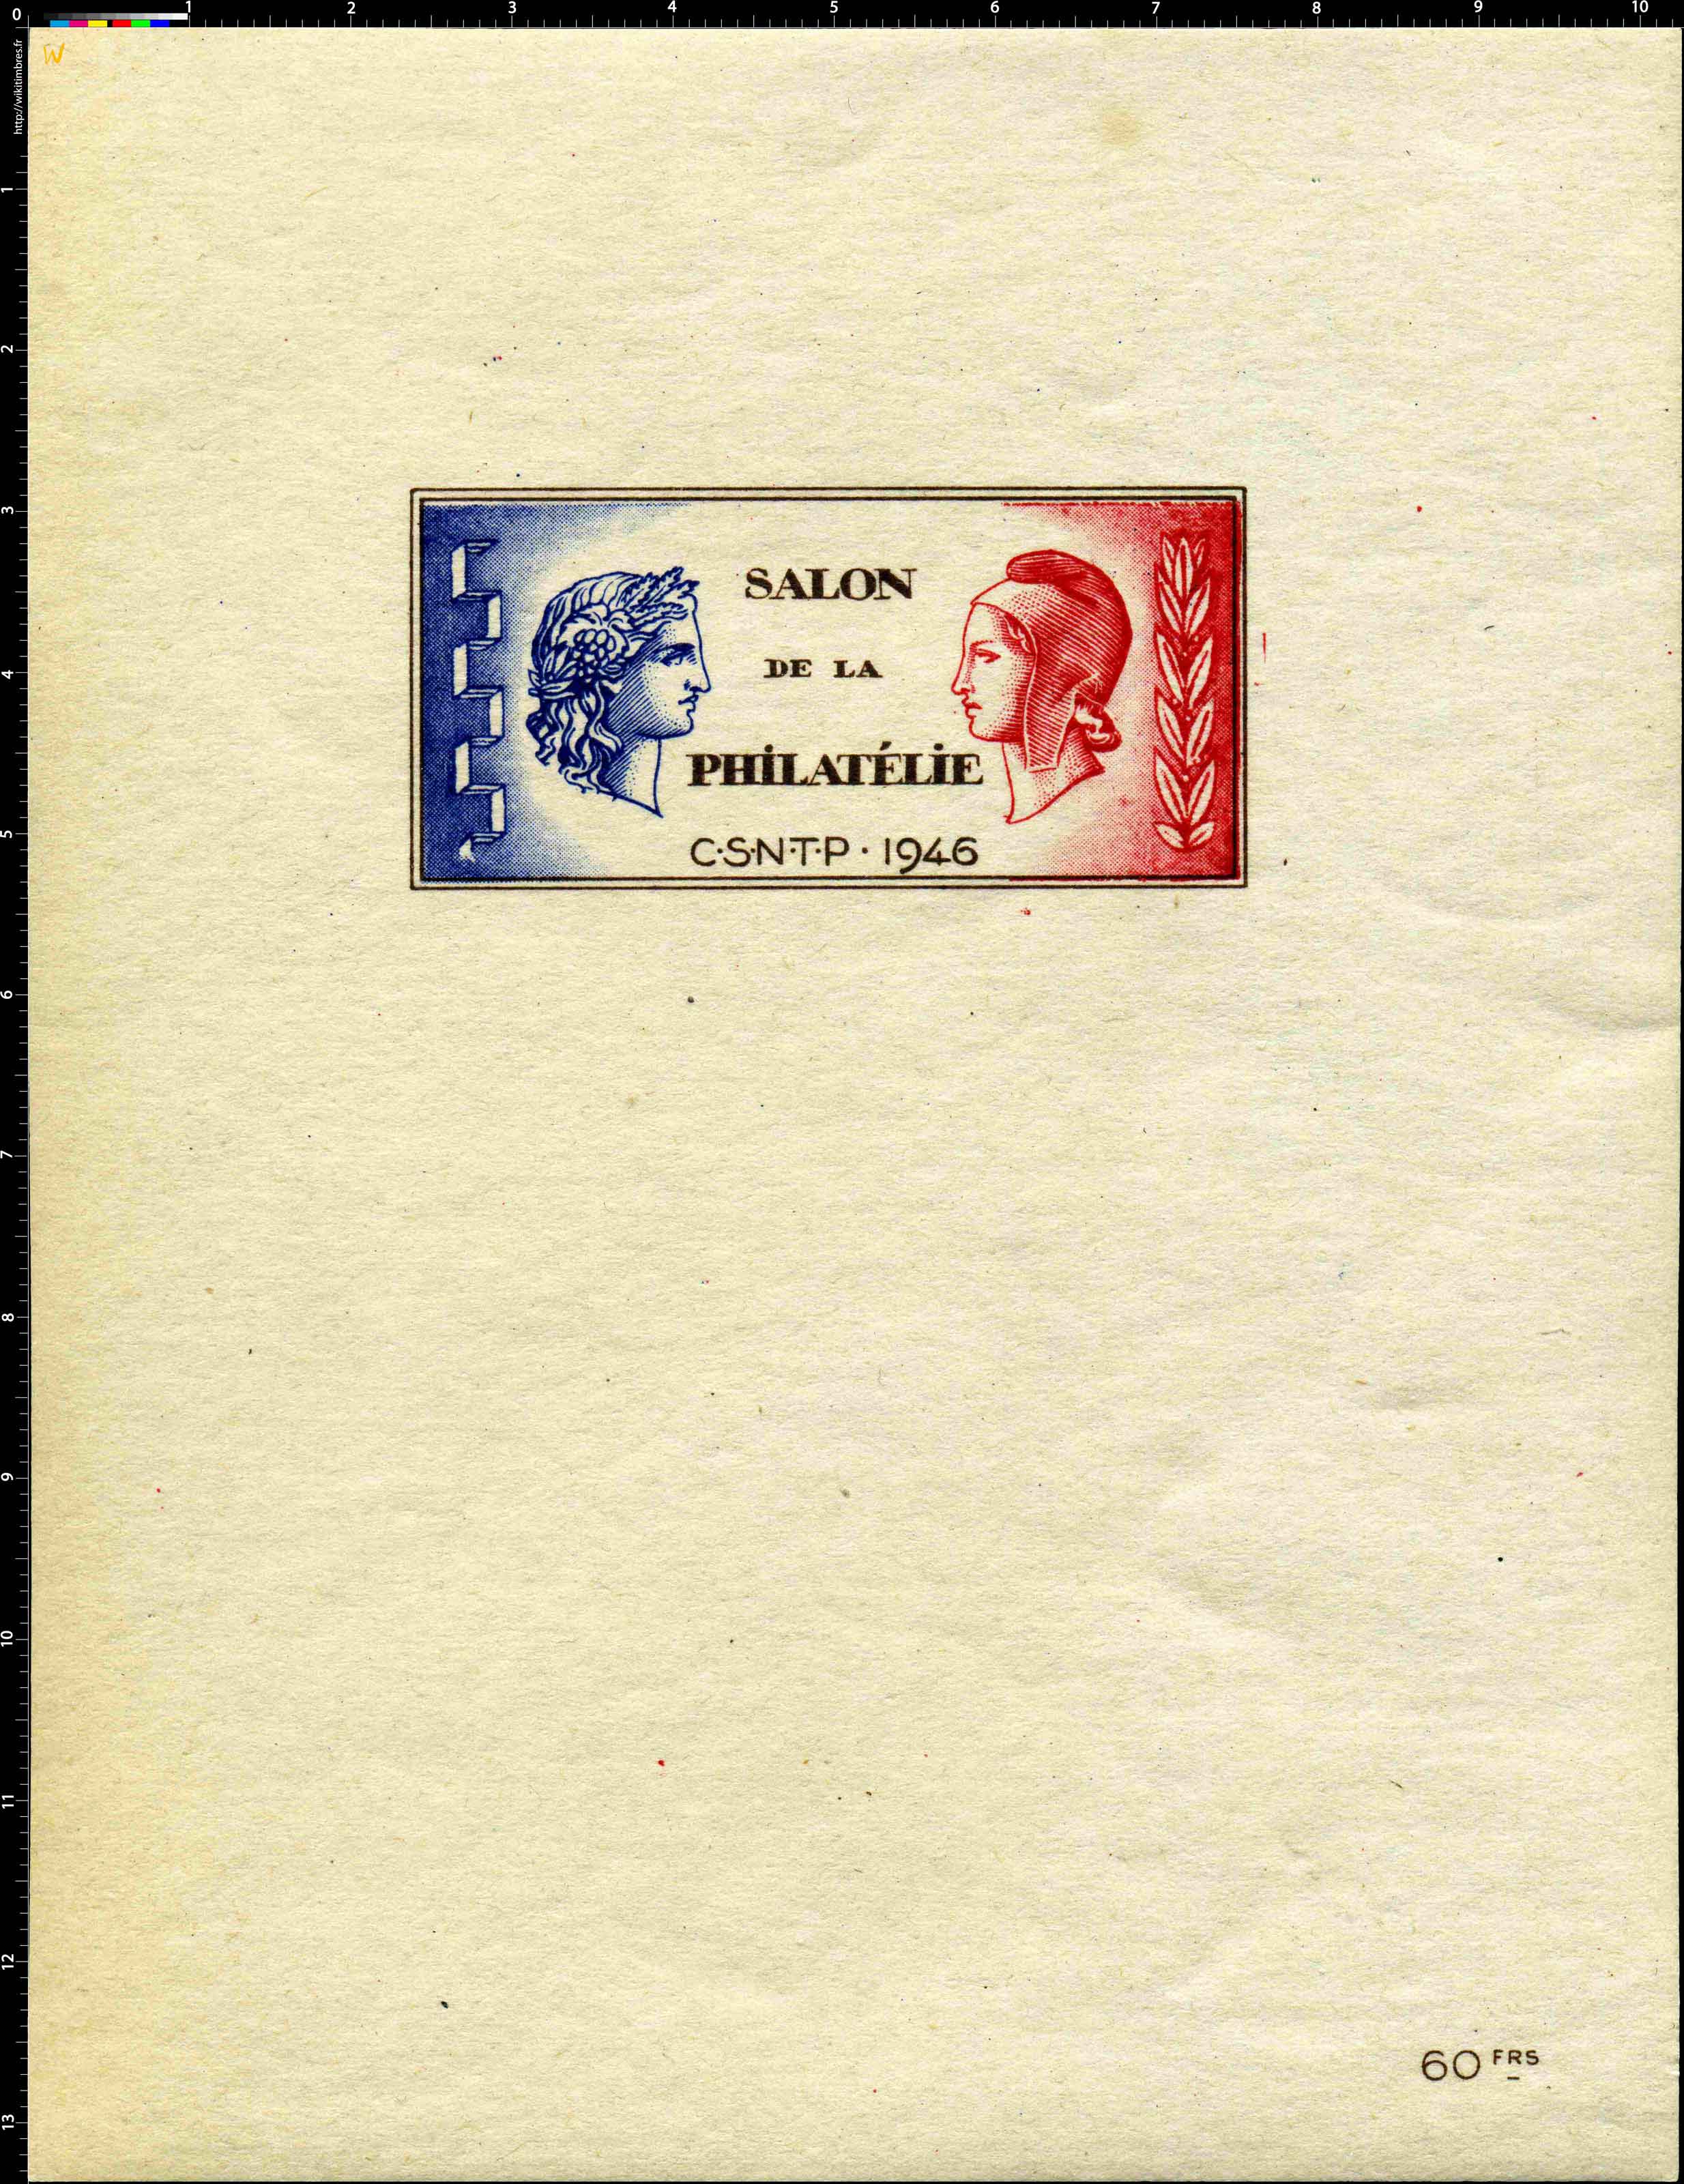 1946 Salon de la philatélie C.S.N.T.P